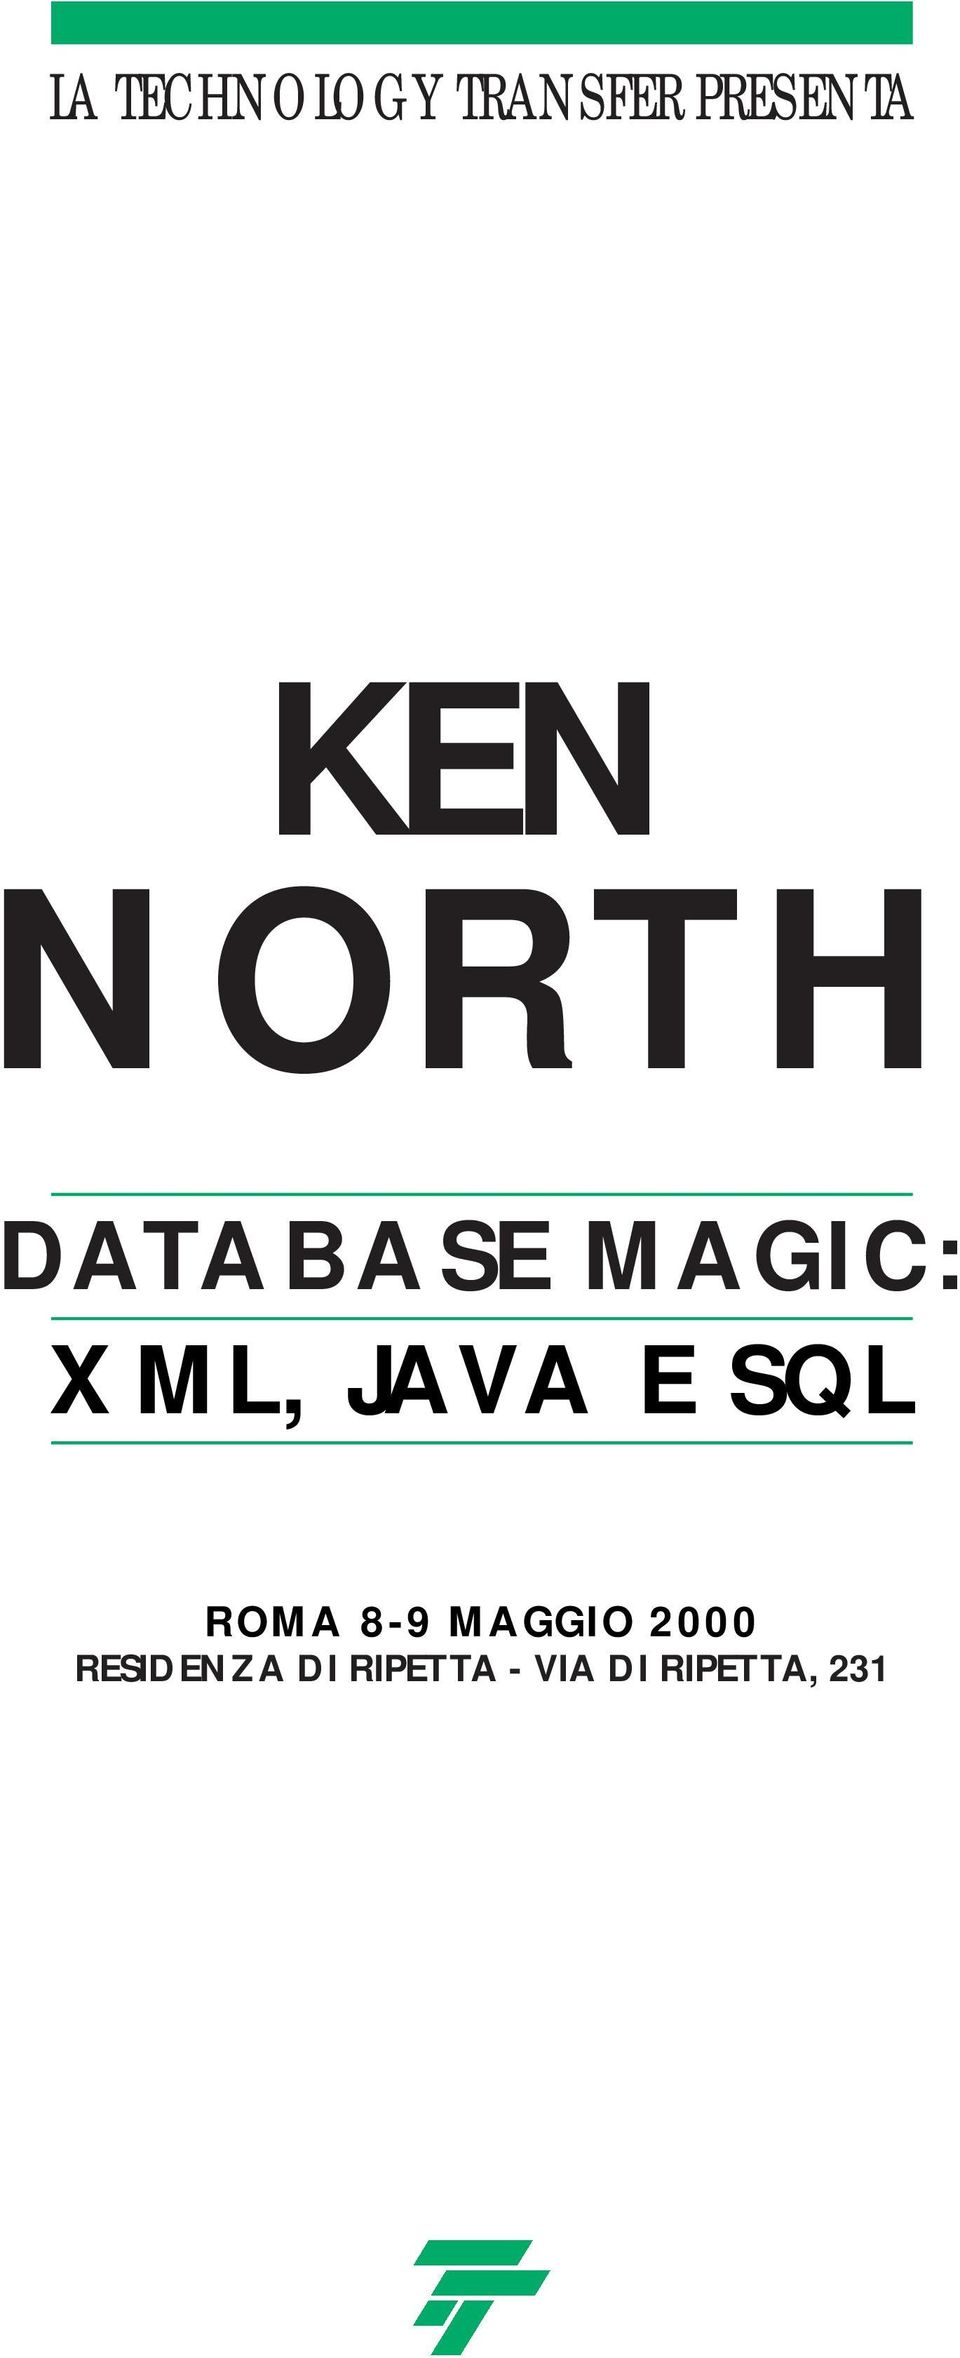 JAVA E SQL ROMA 8-9 MAGGIO 2000